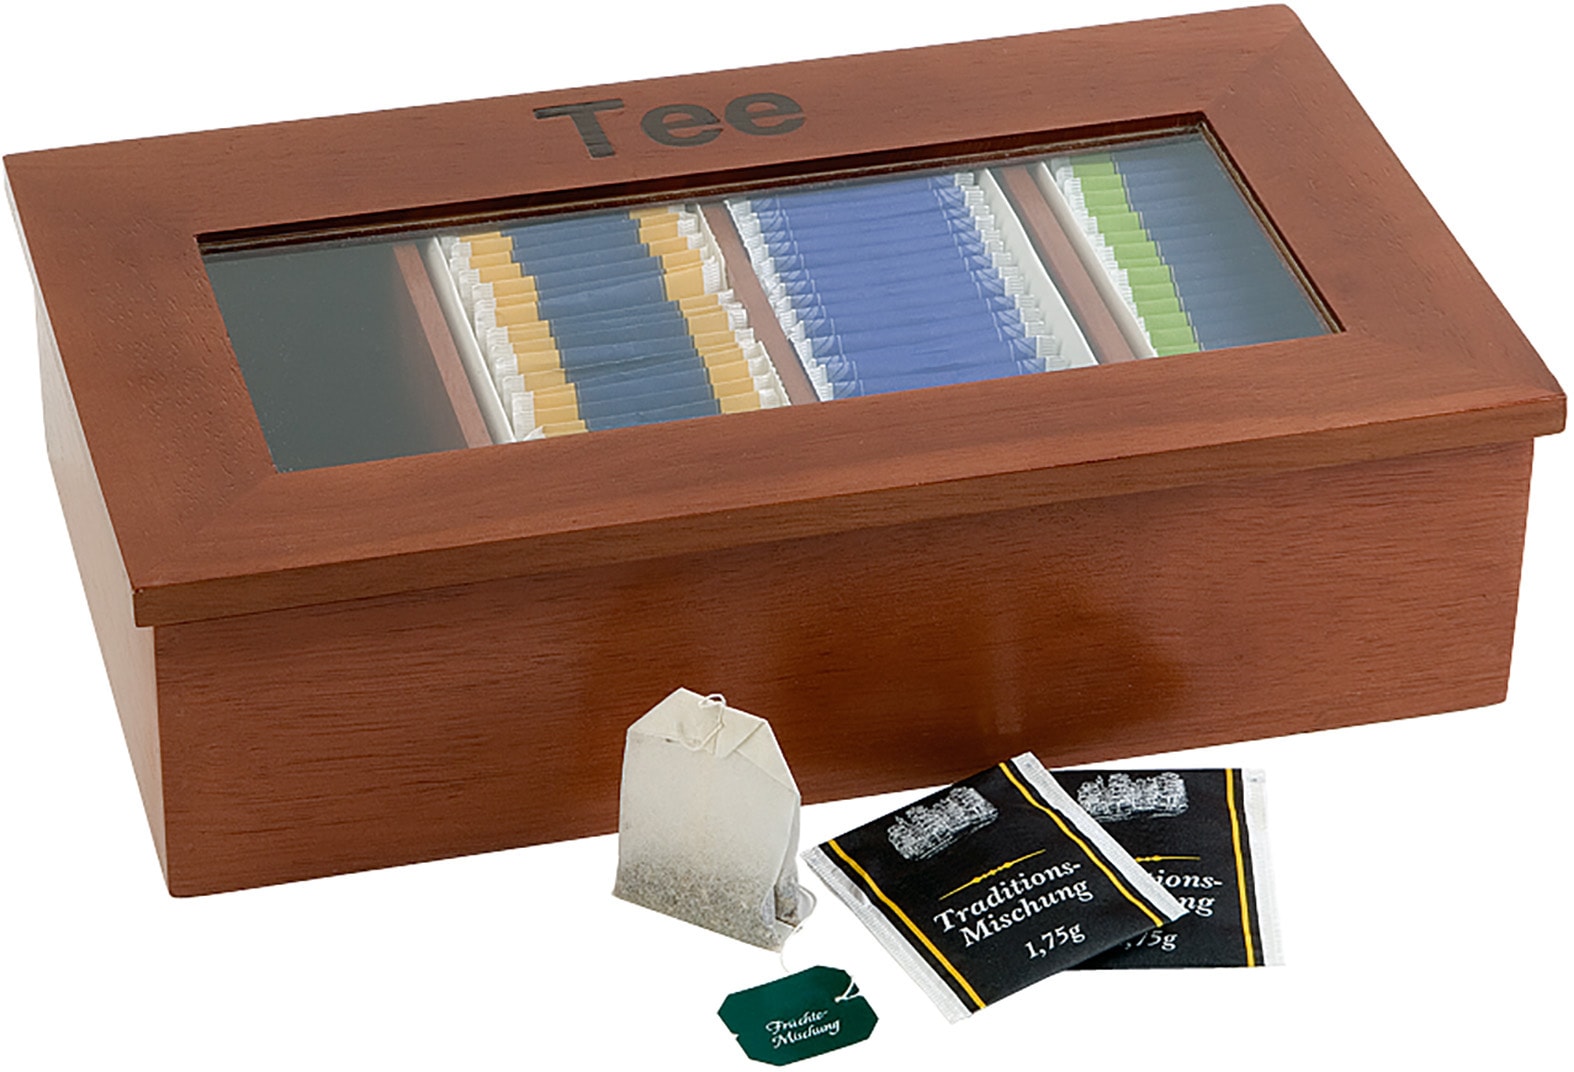 Teebox, (1 tlg.), aus Echtholz, für bis zu 120 Teebeutel, großes Sichtfenster